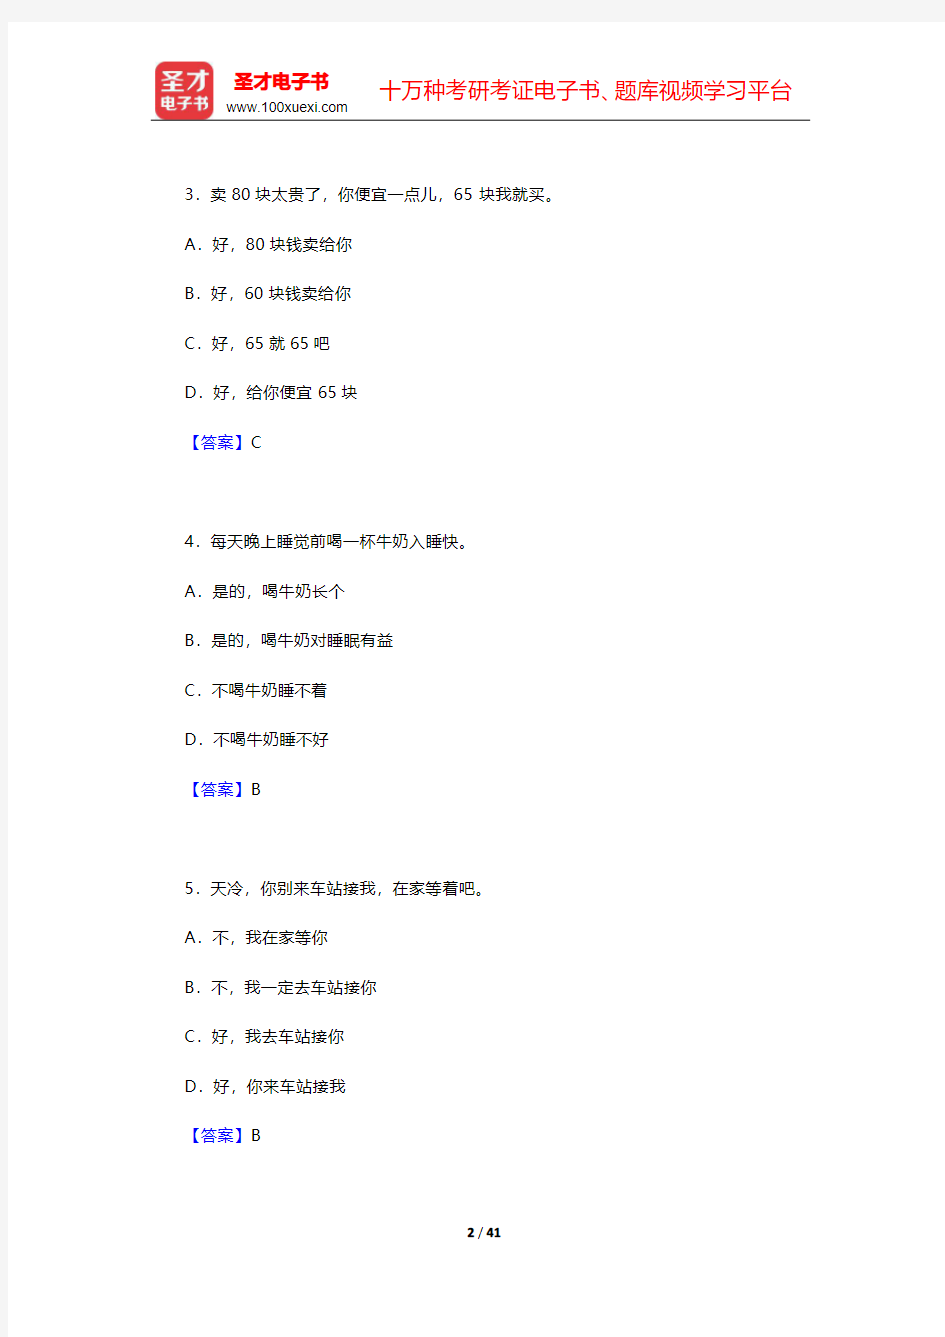 中国少数民族汉语水平等级考试MHK(二级)模拟试题及答案【圣才出品】